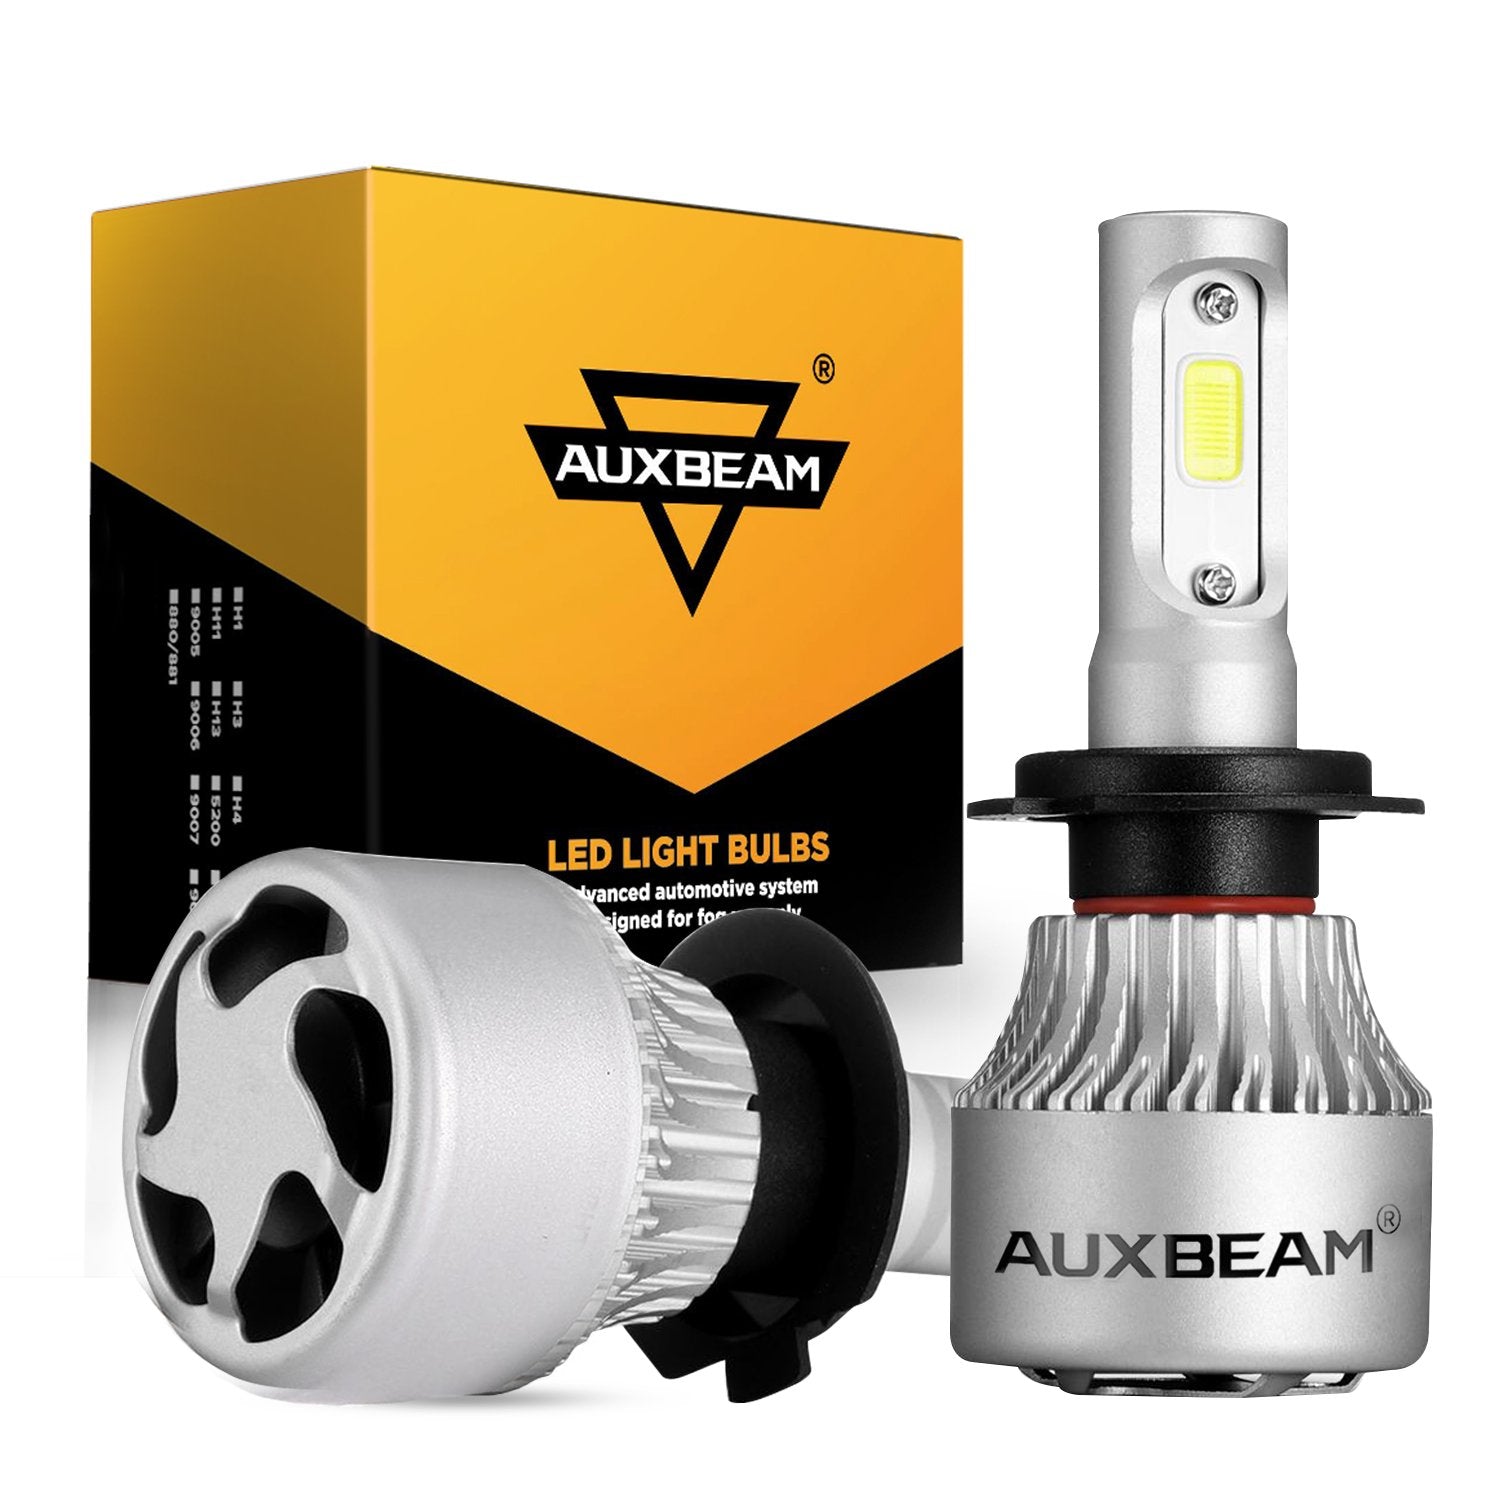 CAR WORK BOX Ampoules LED H7, 70W 14000LM Ampoules Antibrouillard Super  Lumineuses, Lampe de Phare LED de Voiture Pour Ampoule Halogène de